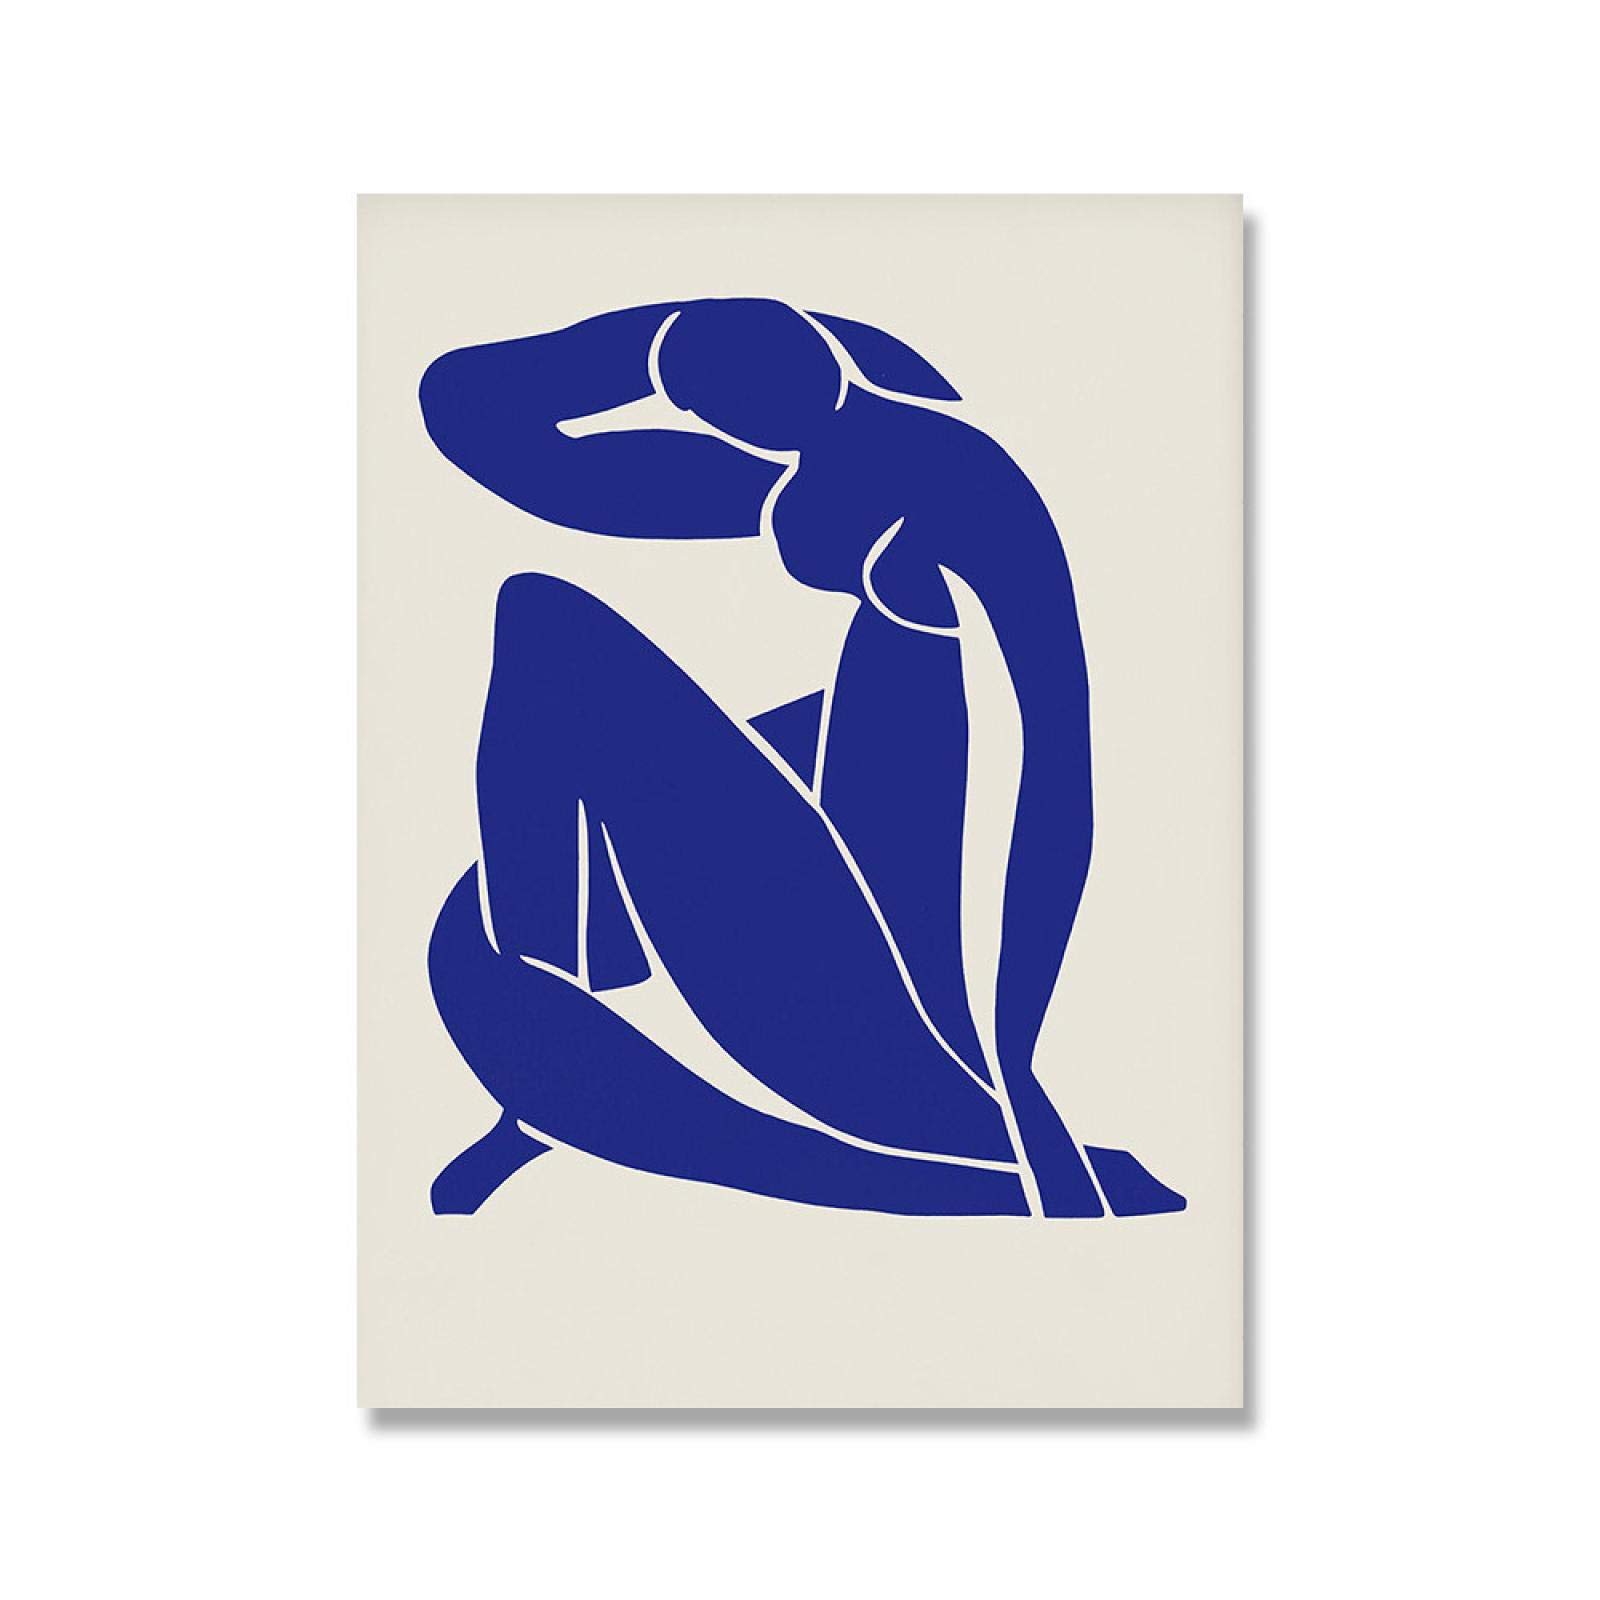 Rumlly Abstrakte Leinwand Wandkunst Gemälde Matisse Blue Nude Poster Hd Print Wandbild für Wohnzimmer Home Decoration 35x50cm Rahmenlos